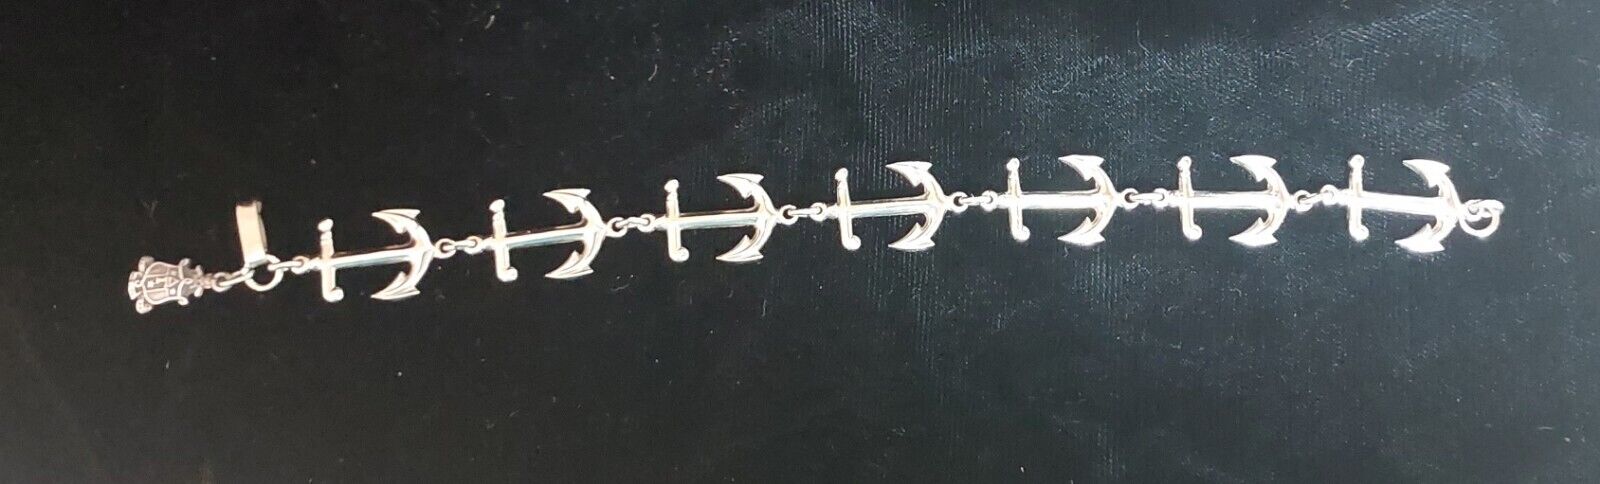 VINTAGE Delta Gamma sorority sterling silver anchor crest bracelet - DG - OLD